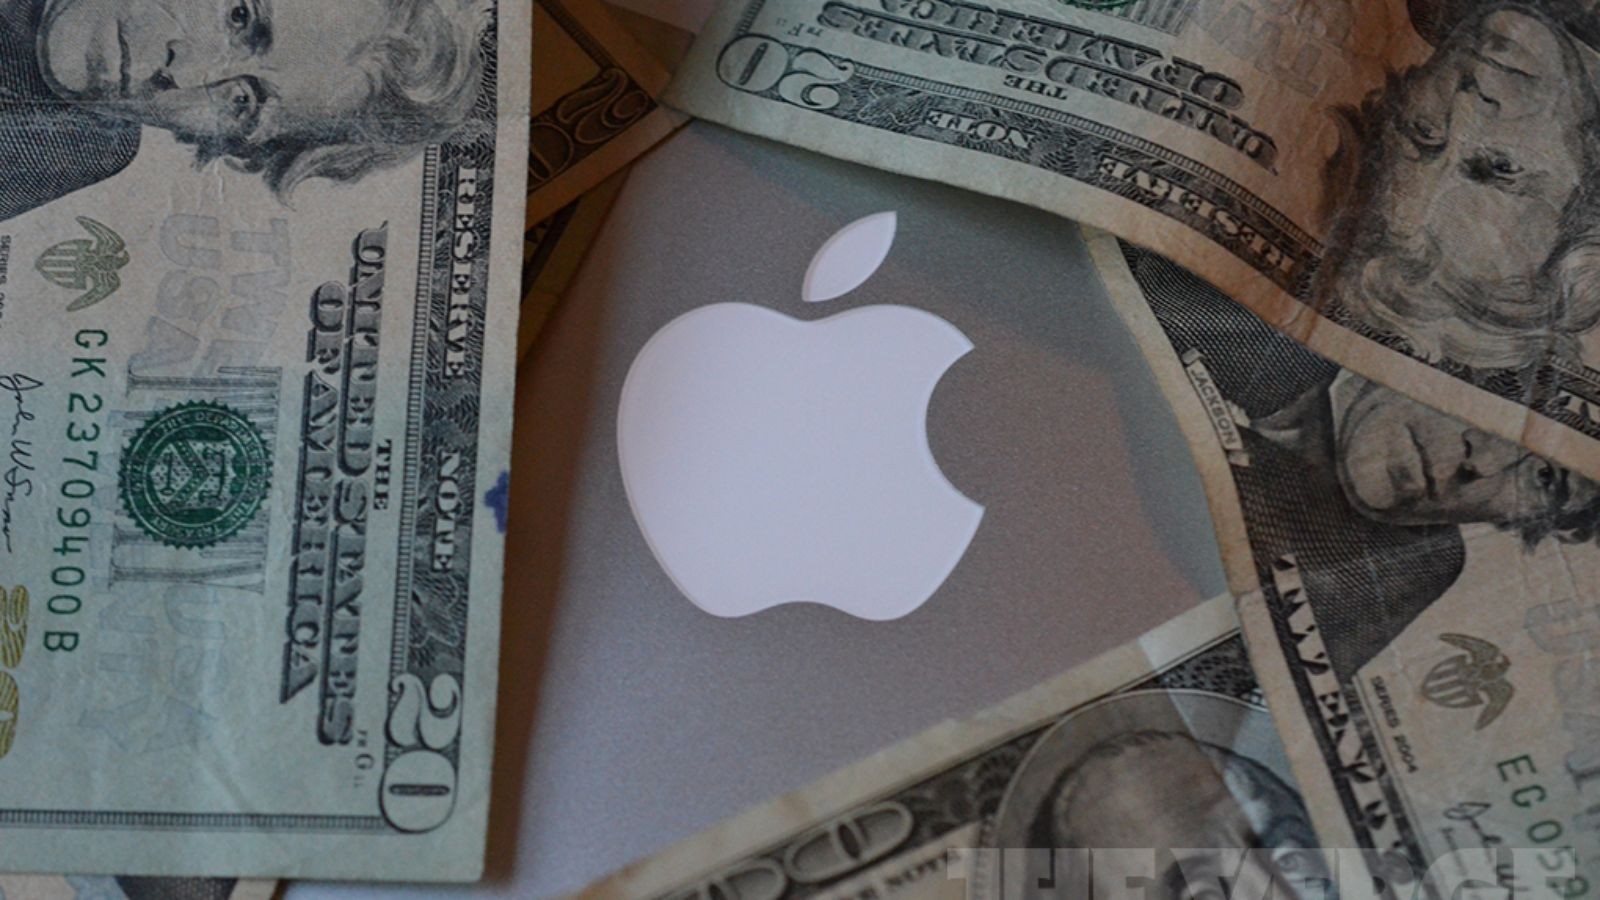 Alto preço do iPhone tem tornado venda cada vez mais difícil, diz